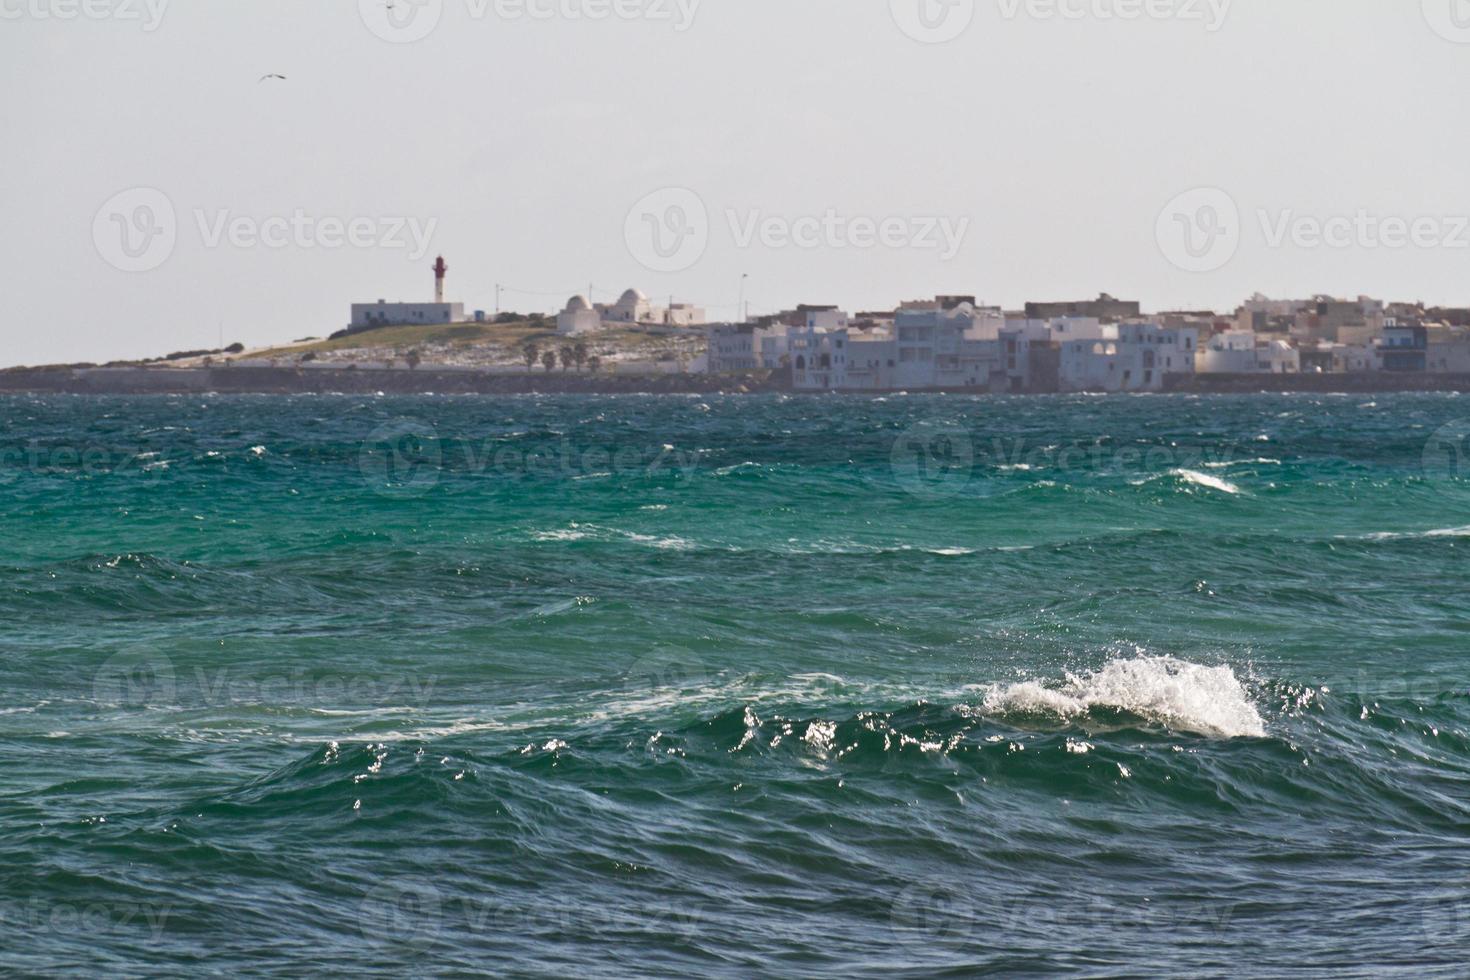 onde del mare sul Mar Mediterraneo foto